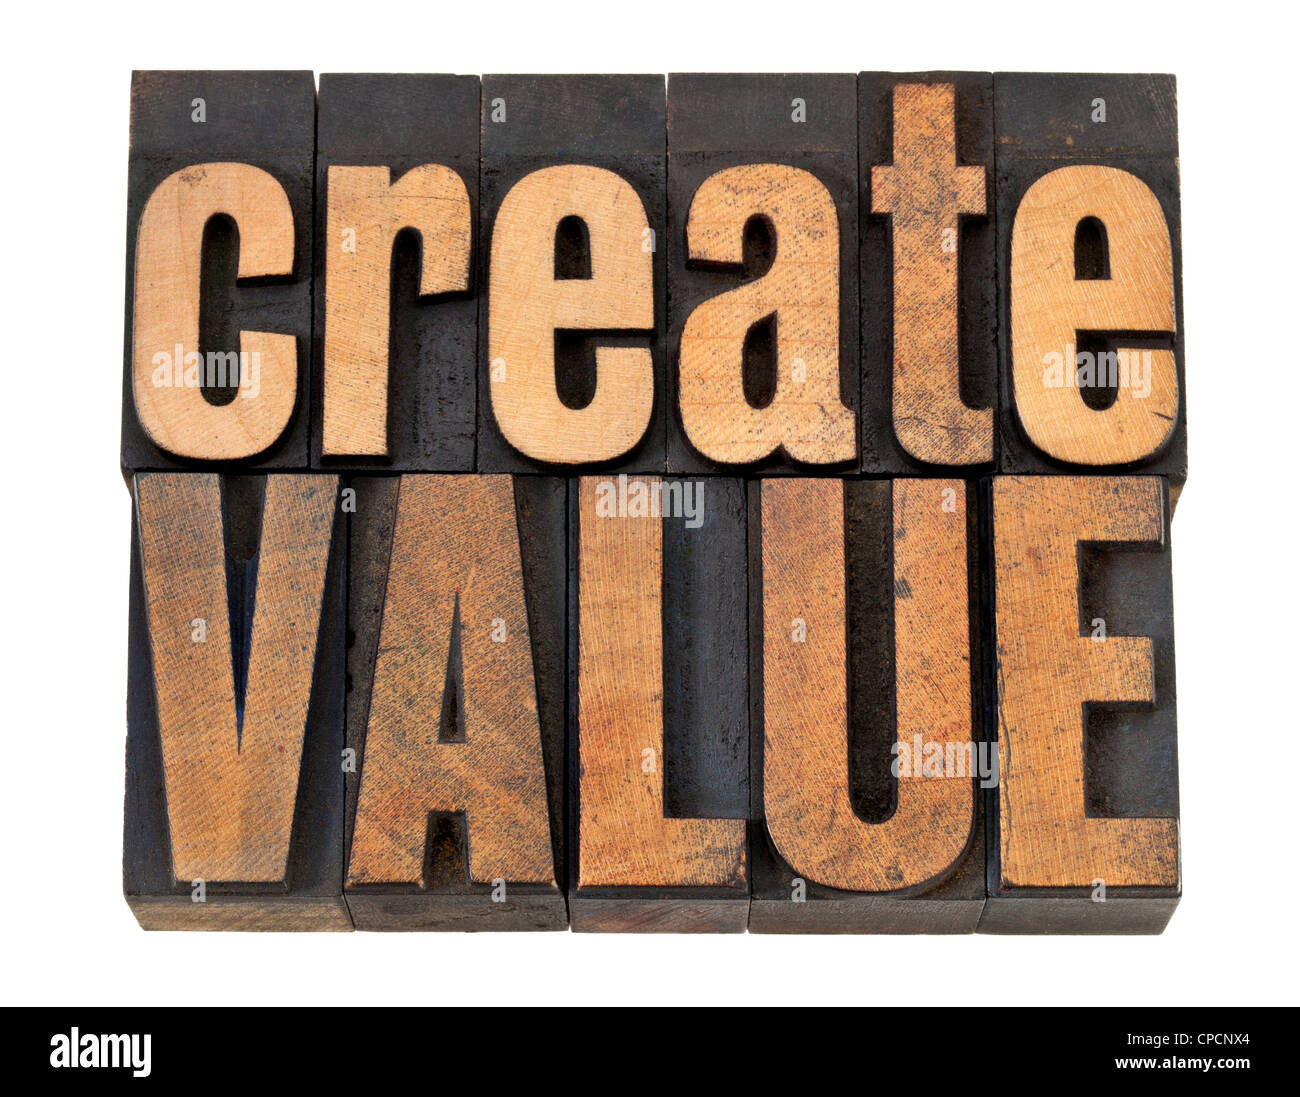 Creare valore - ispirazione concetto - parole isolate in rilievografia vintage tipo legno Foto Stock